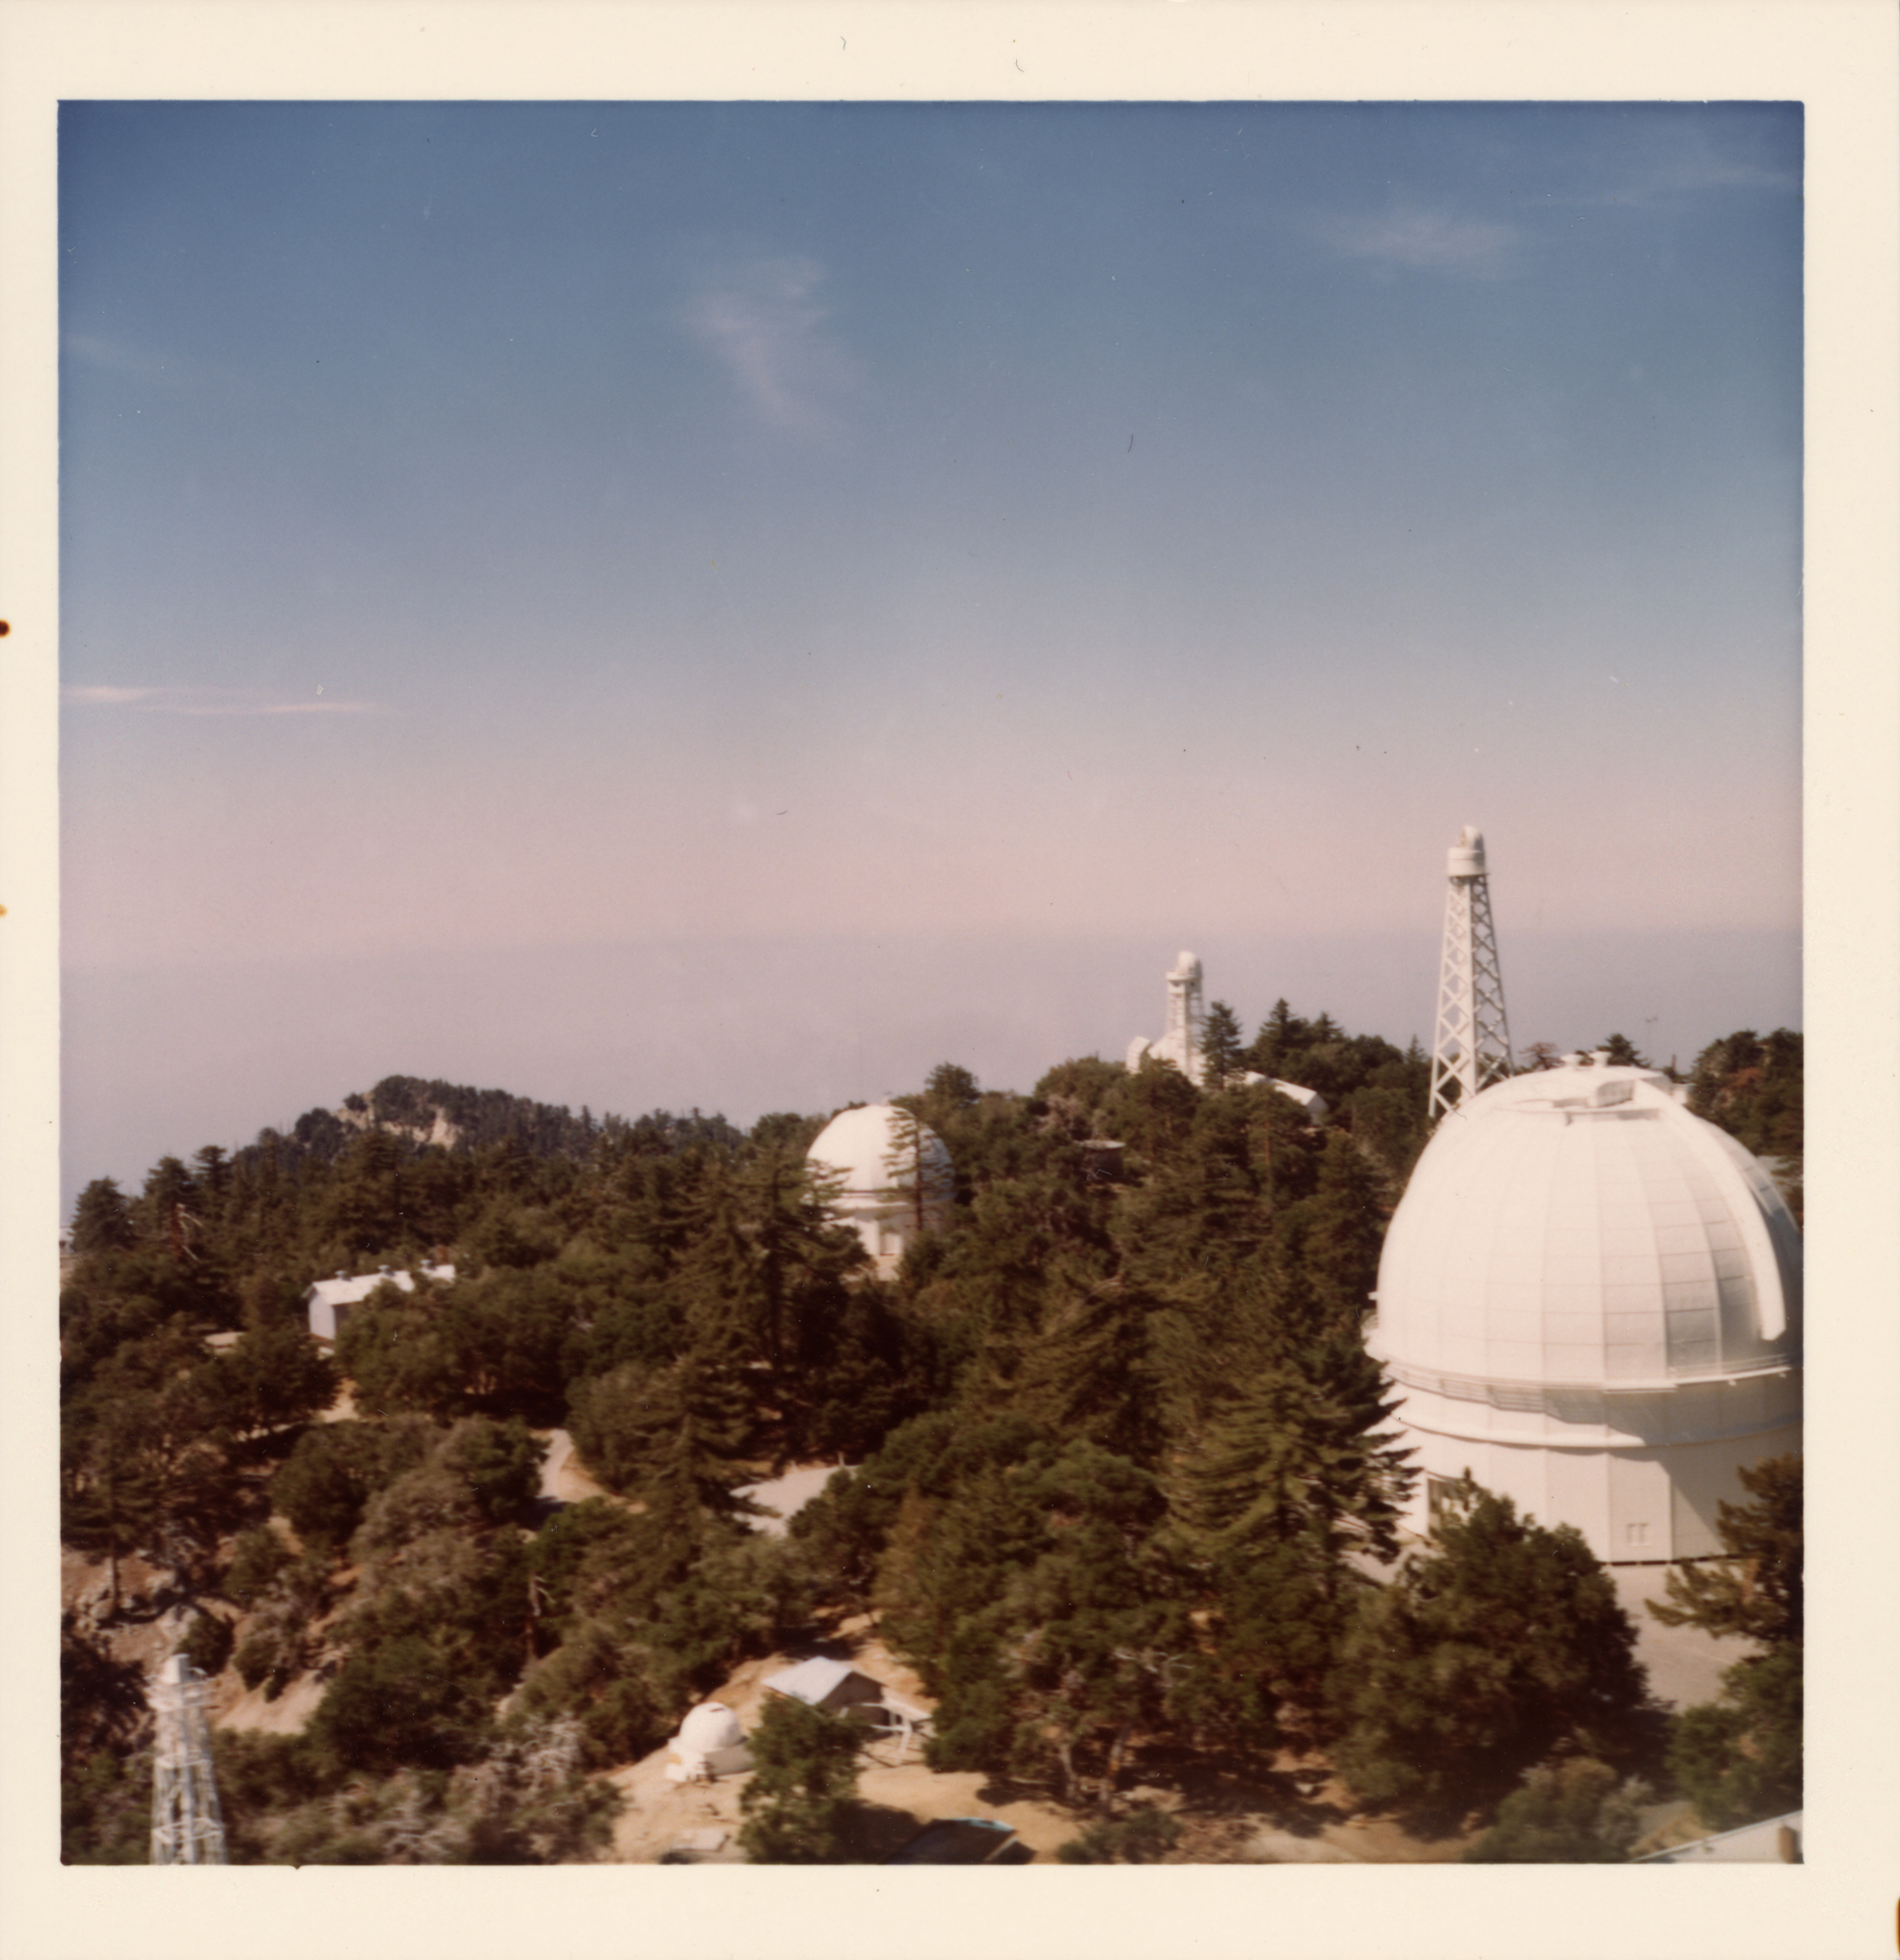 Mt. Wilson telescopes